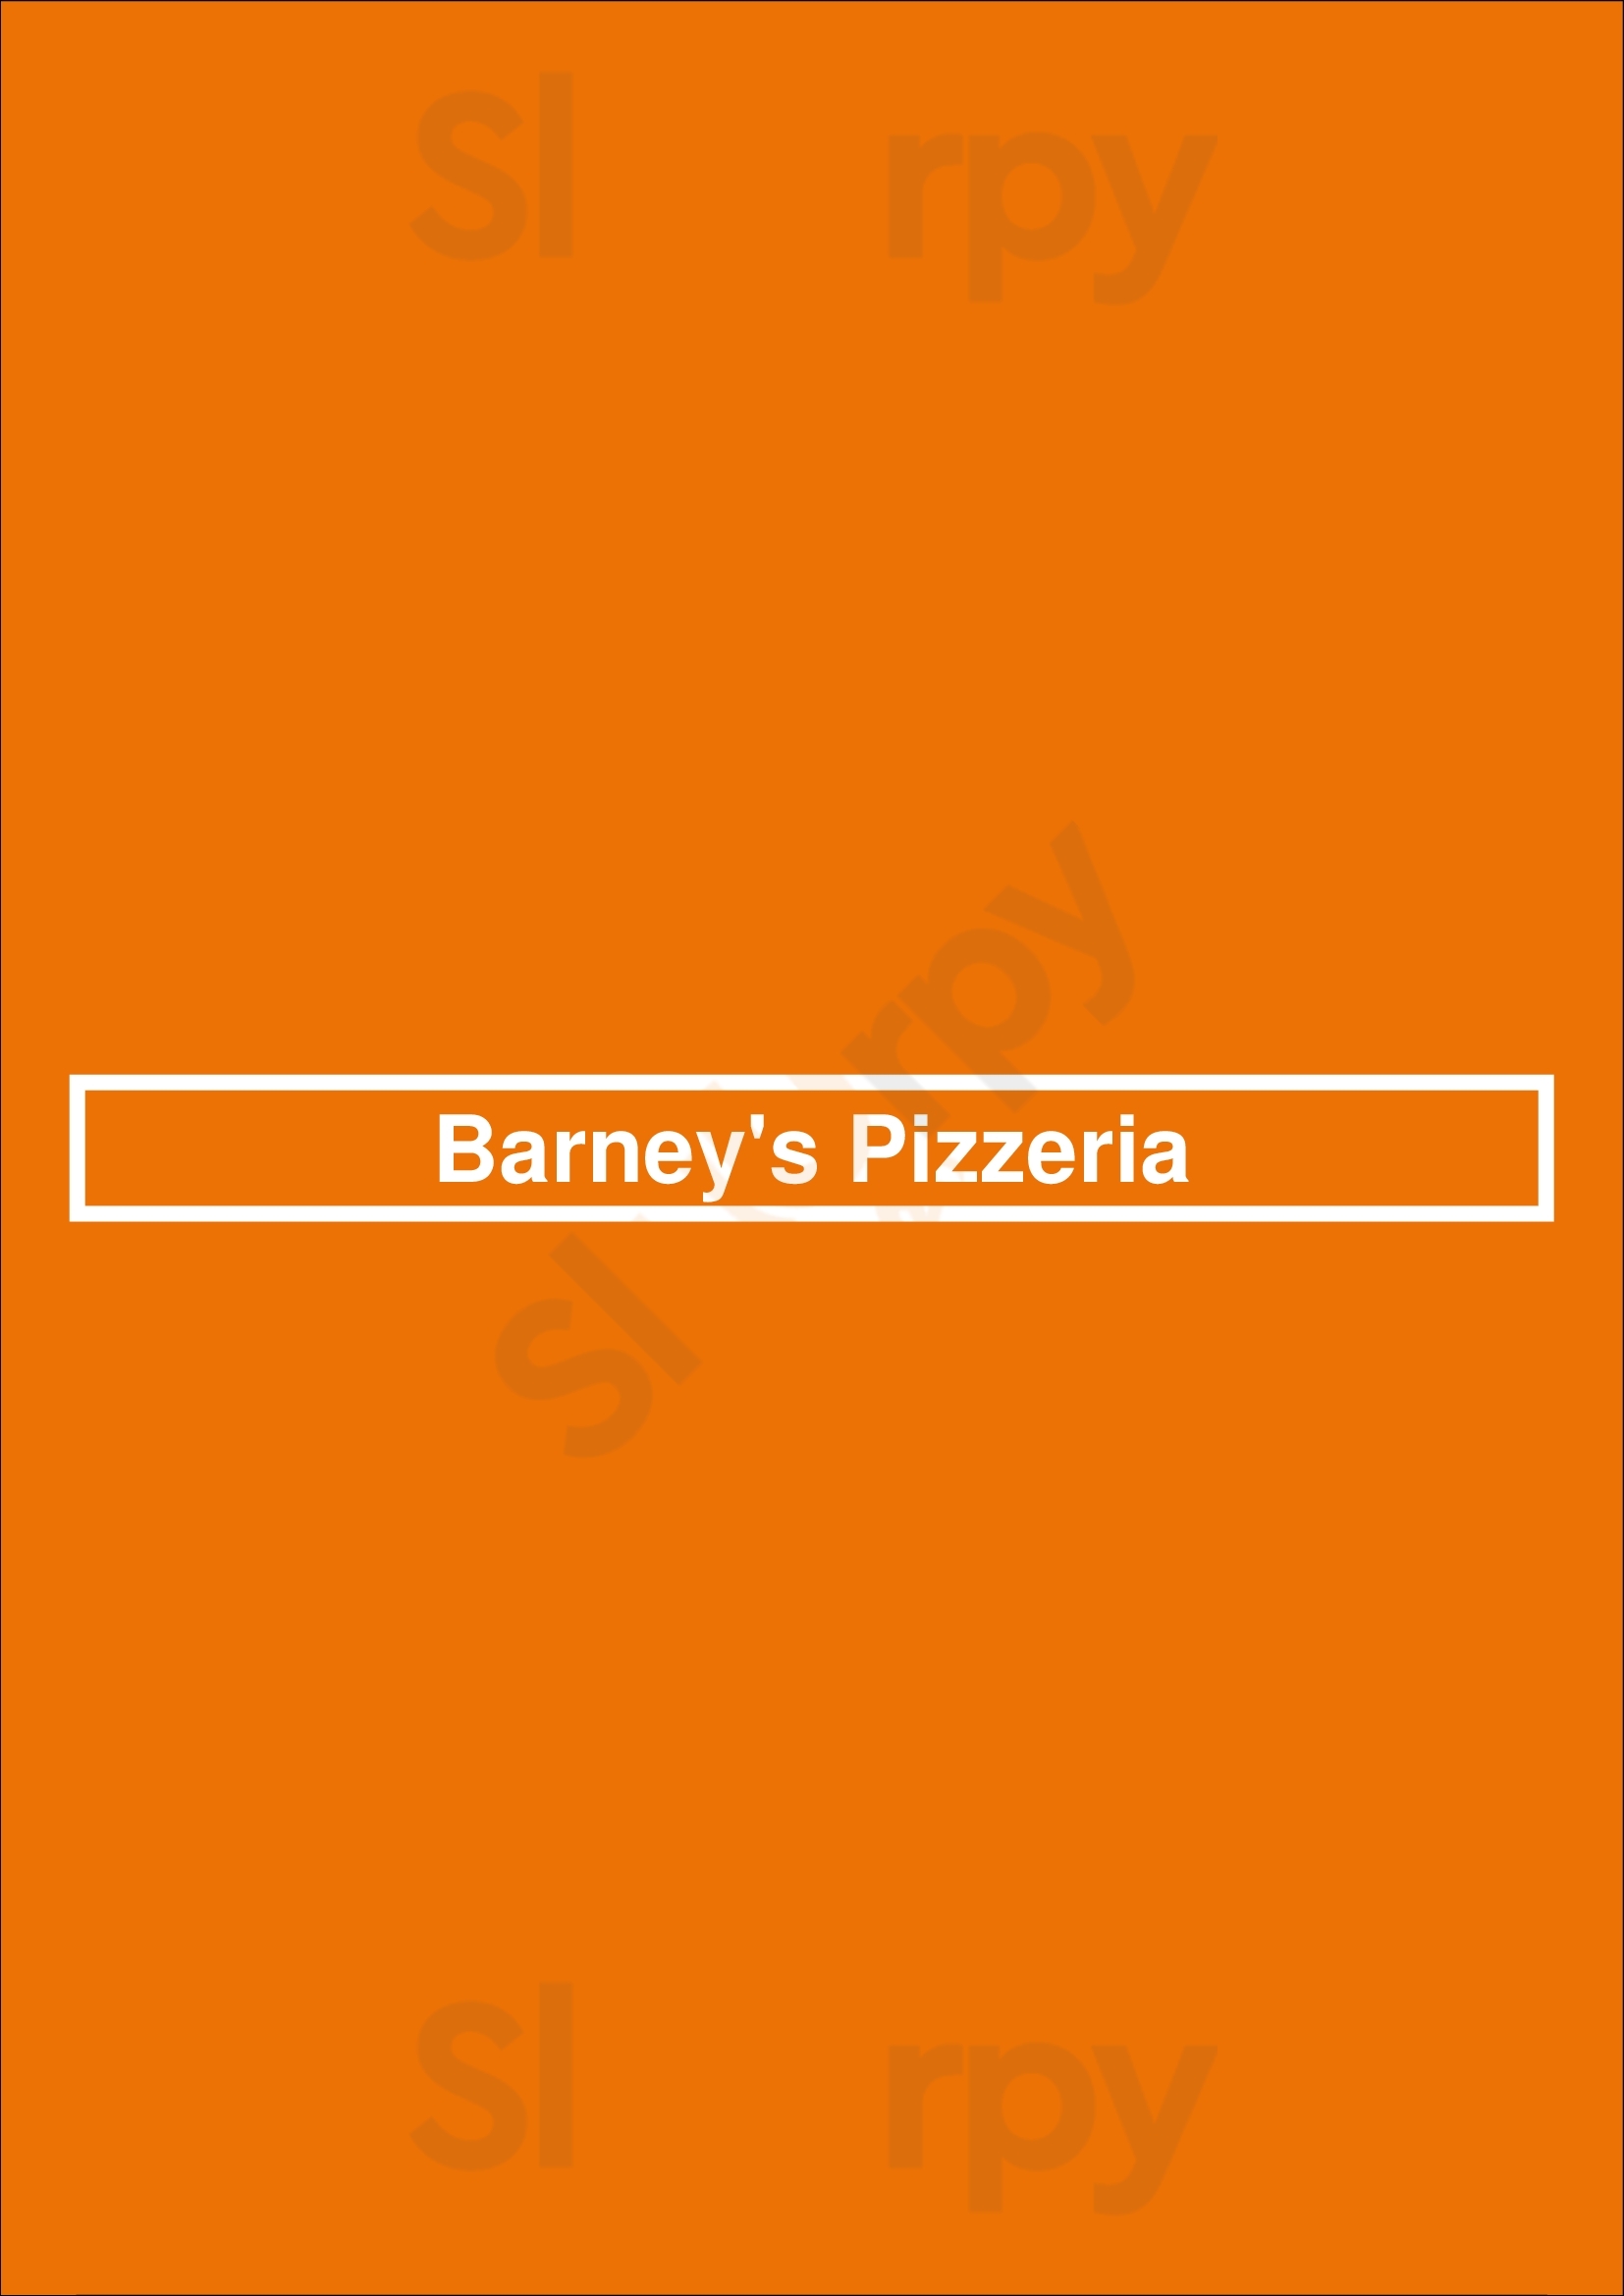 Barney's Pizzeria Chicago Menu - 1